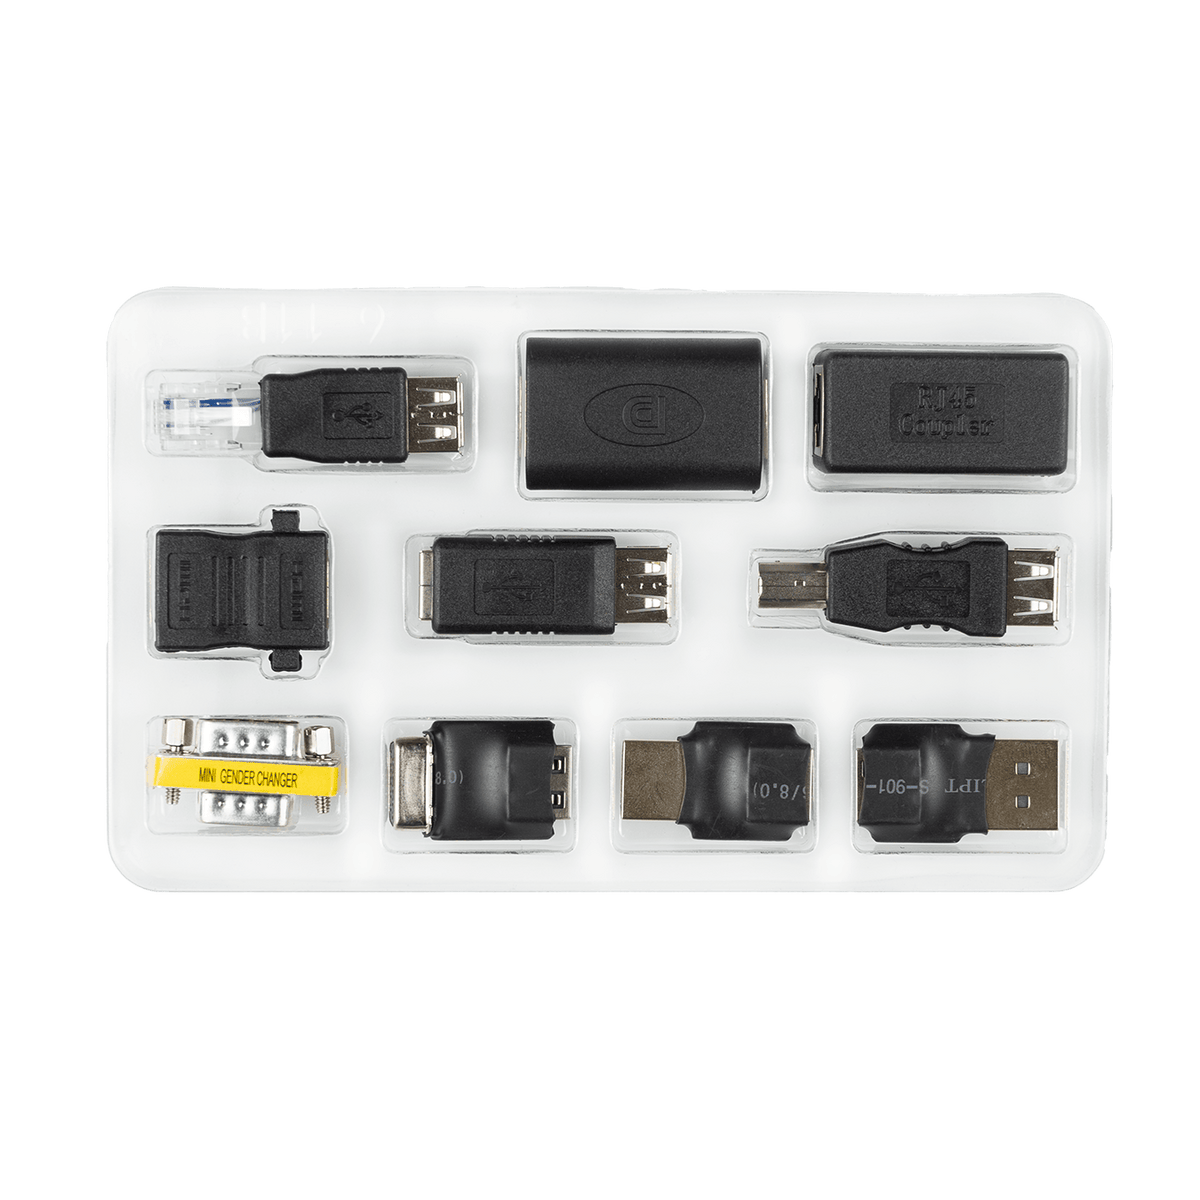 Official USB Killer Pro Kit